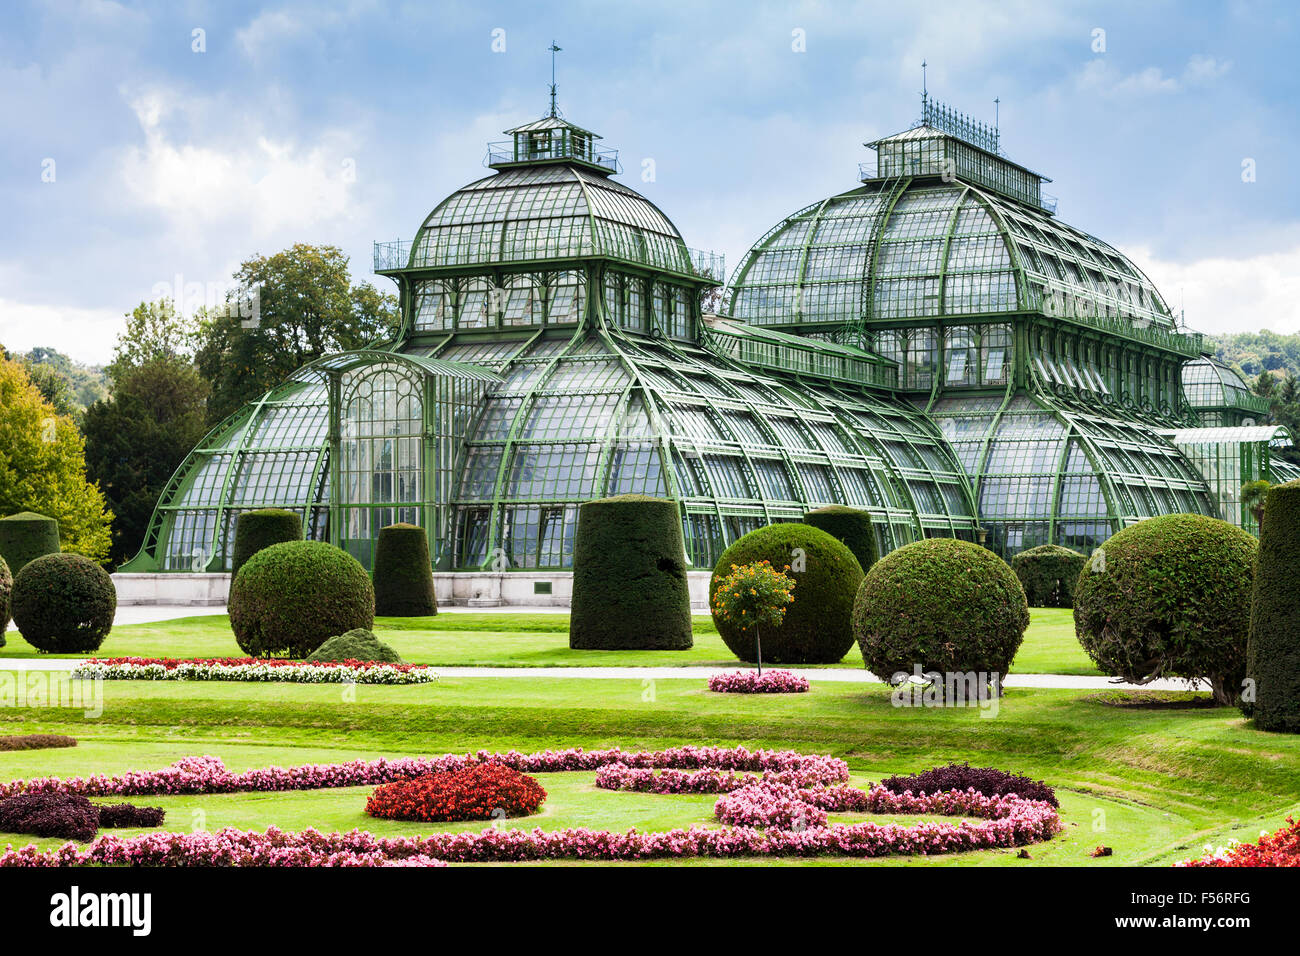 Viajar a la ciudad de Viena - la Casa de las palmeras, un gran invernadero en el jardín del palacio Schloss Schonbrunn, Viena, Austria Foto de stock